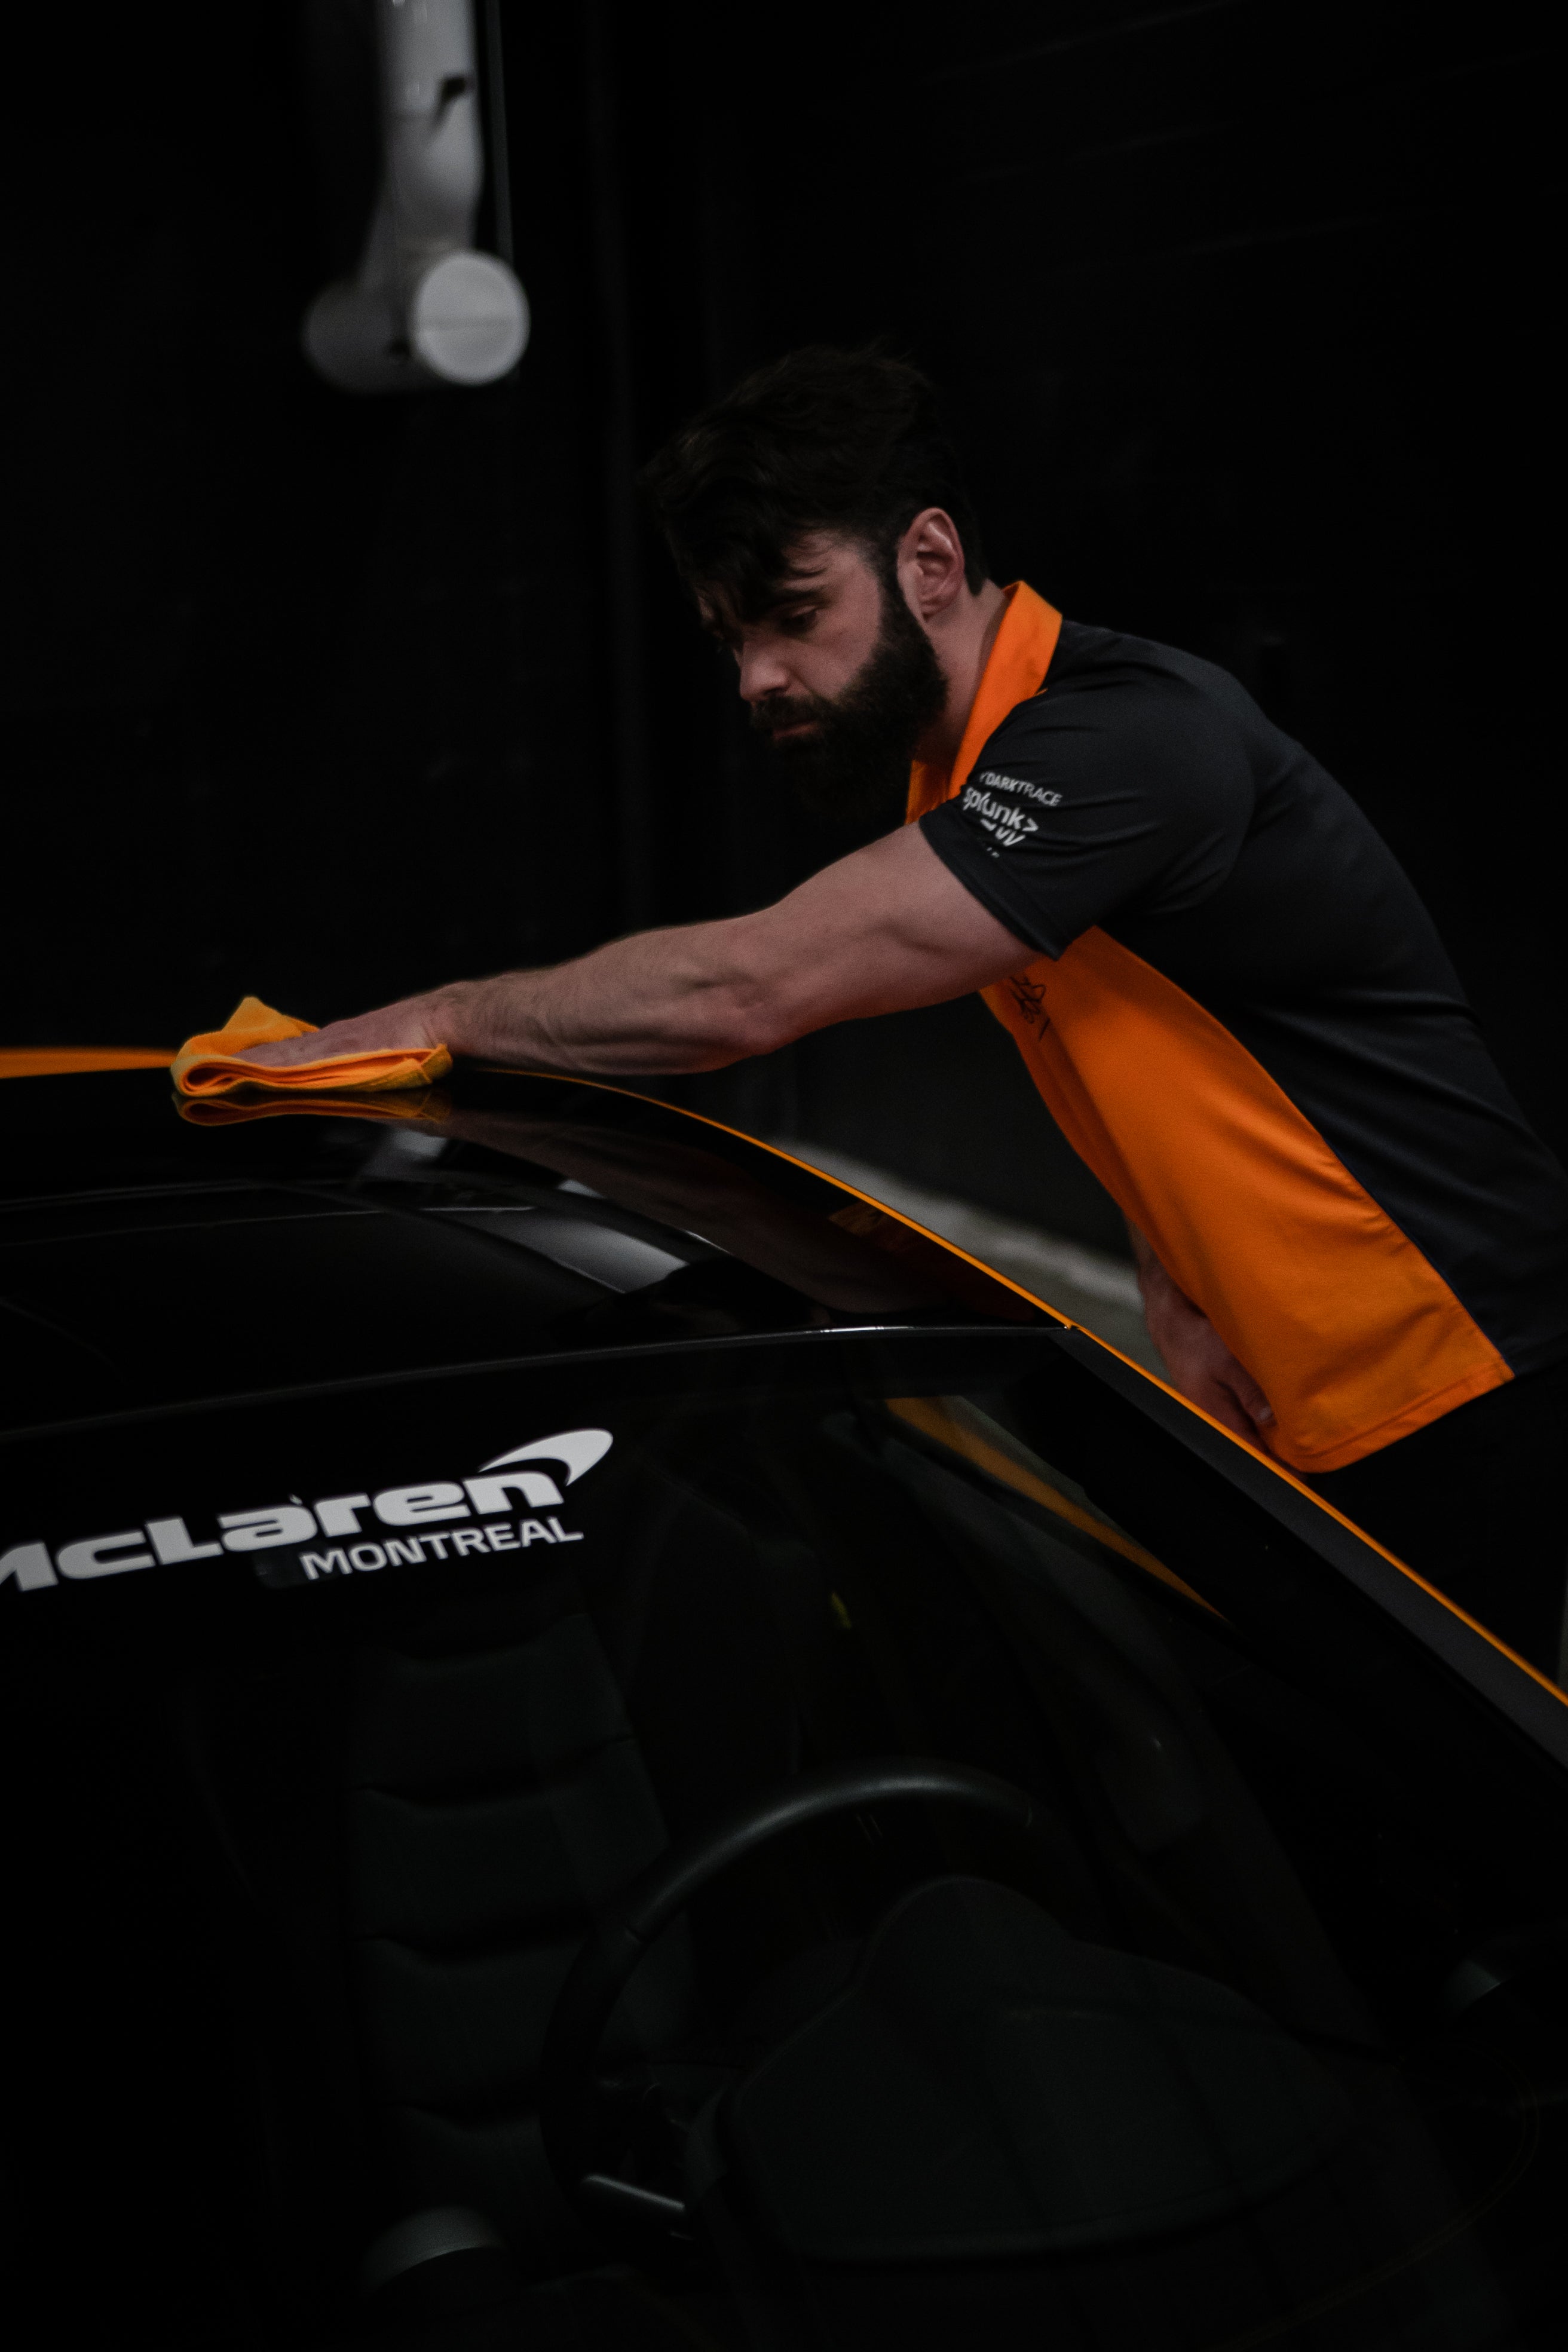 McLaren's Quick Detailer for cars